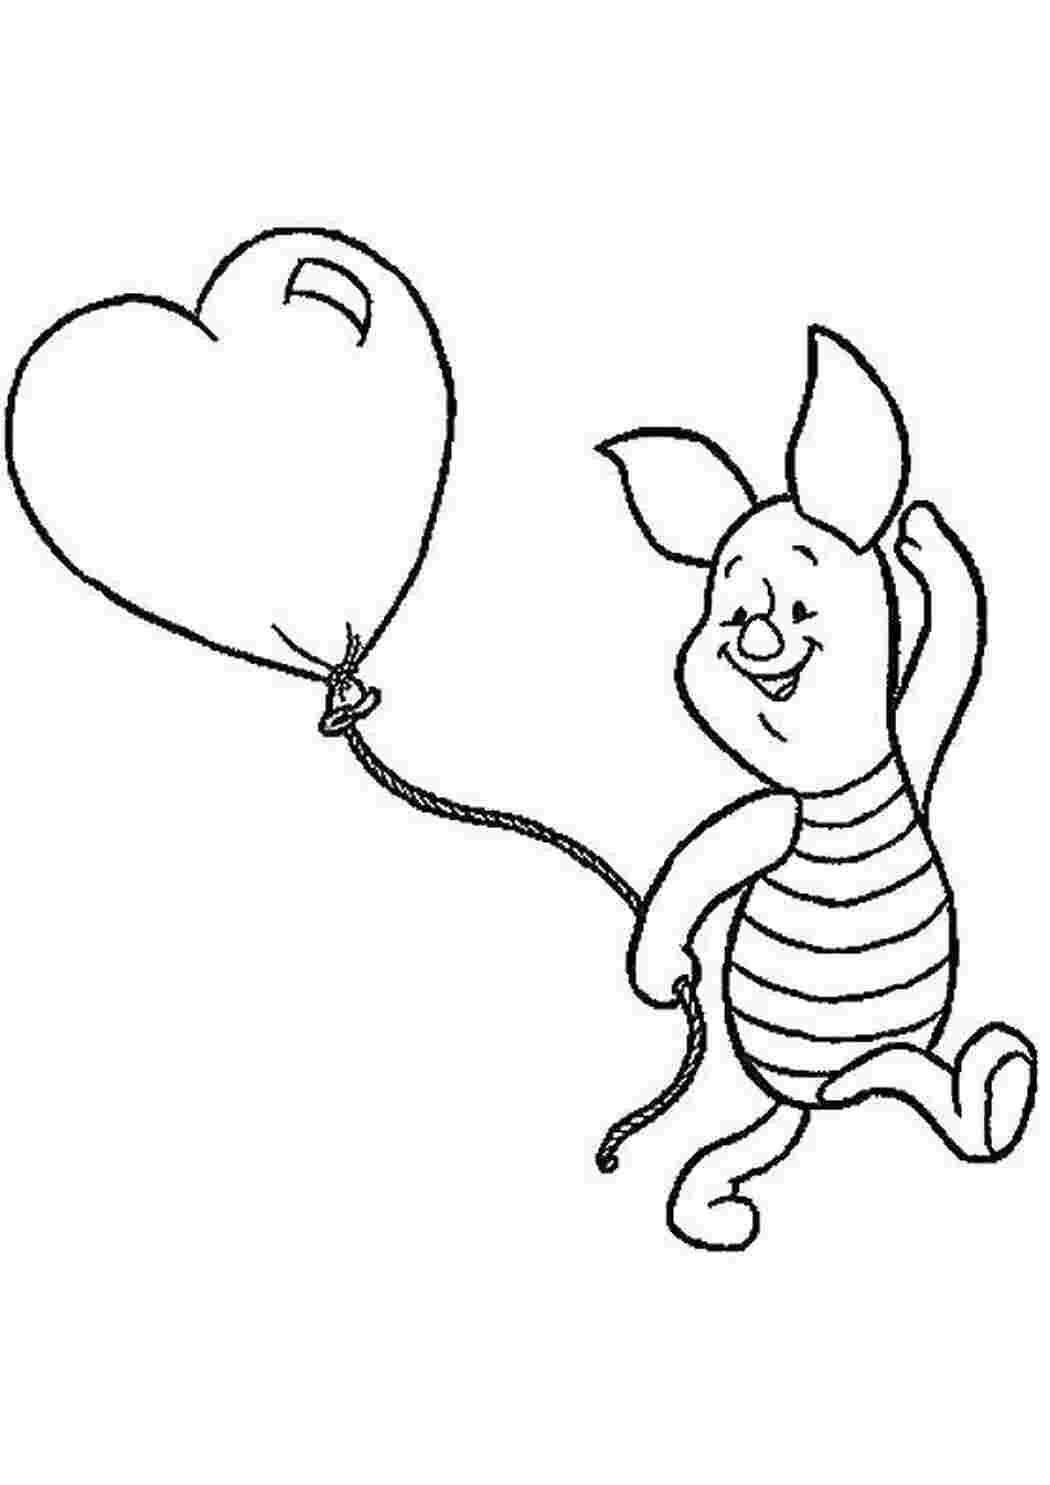 Раскраски Пятачок и шарик Диснеевские мультфильмы Пятачок, шарик, сердце